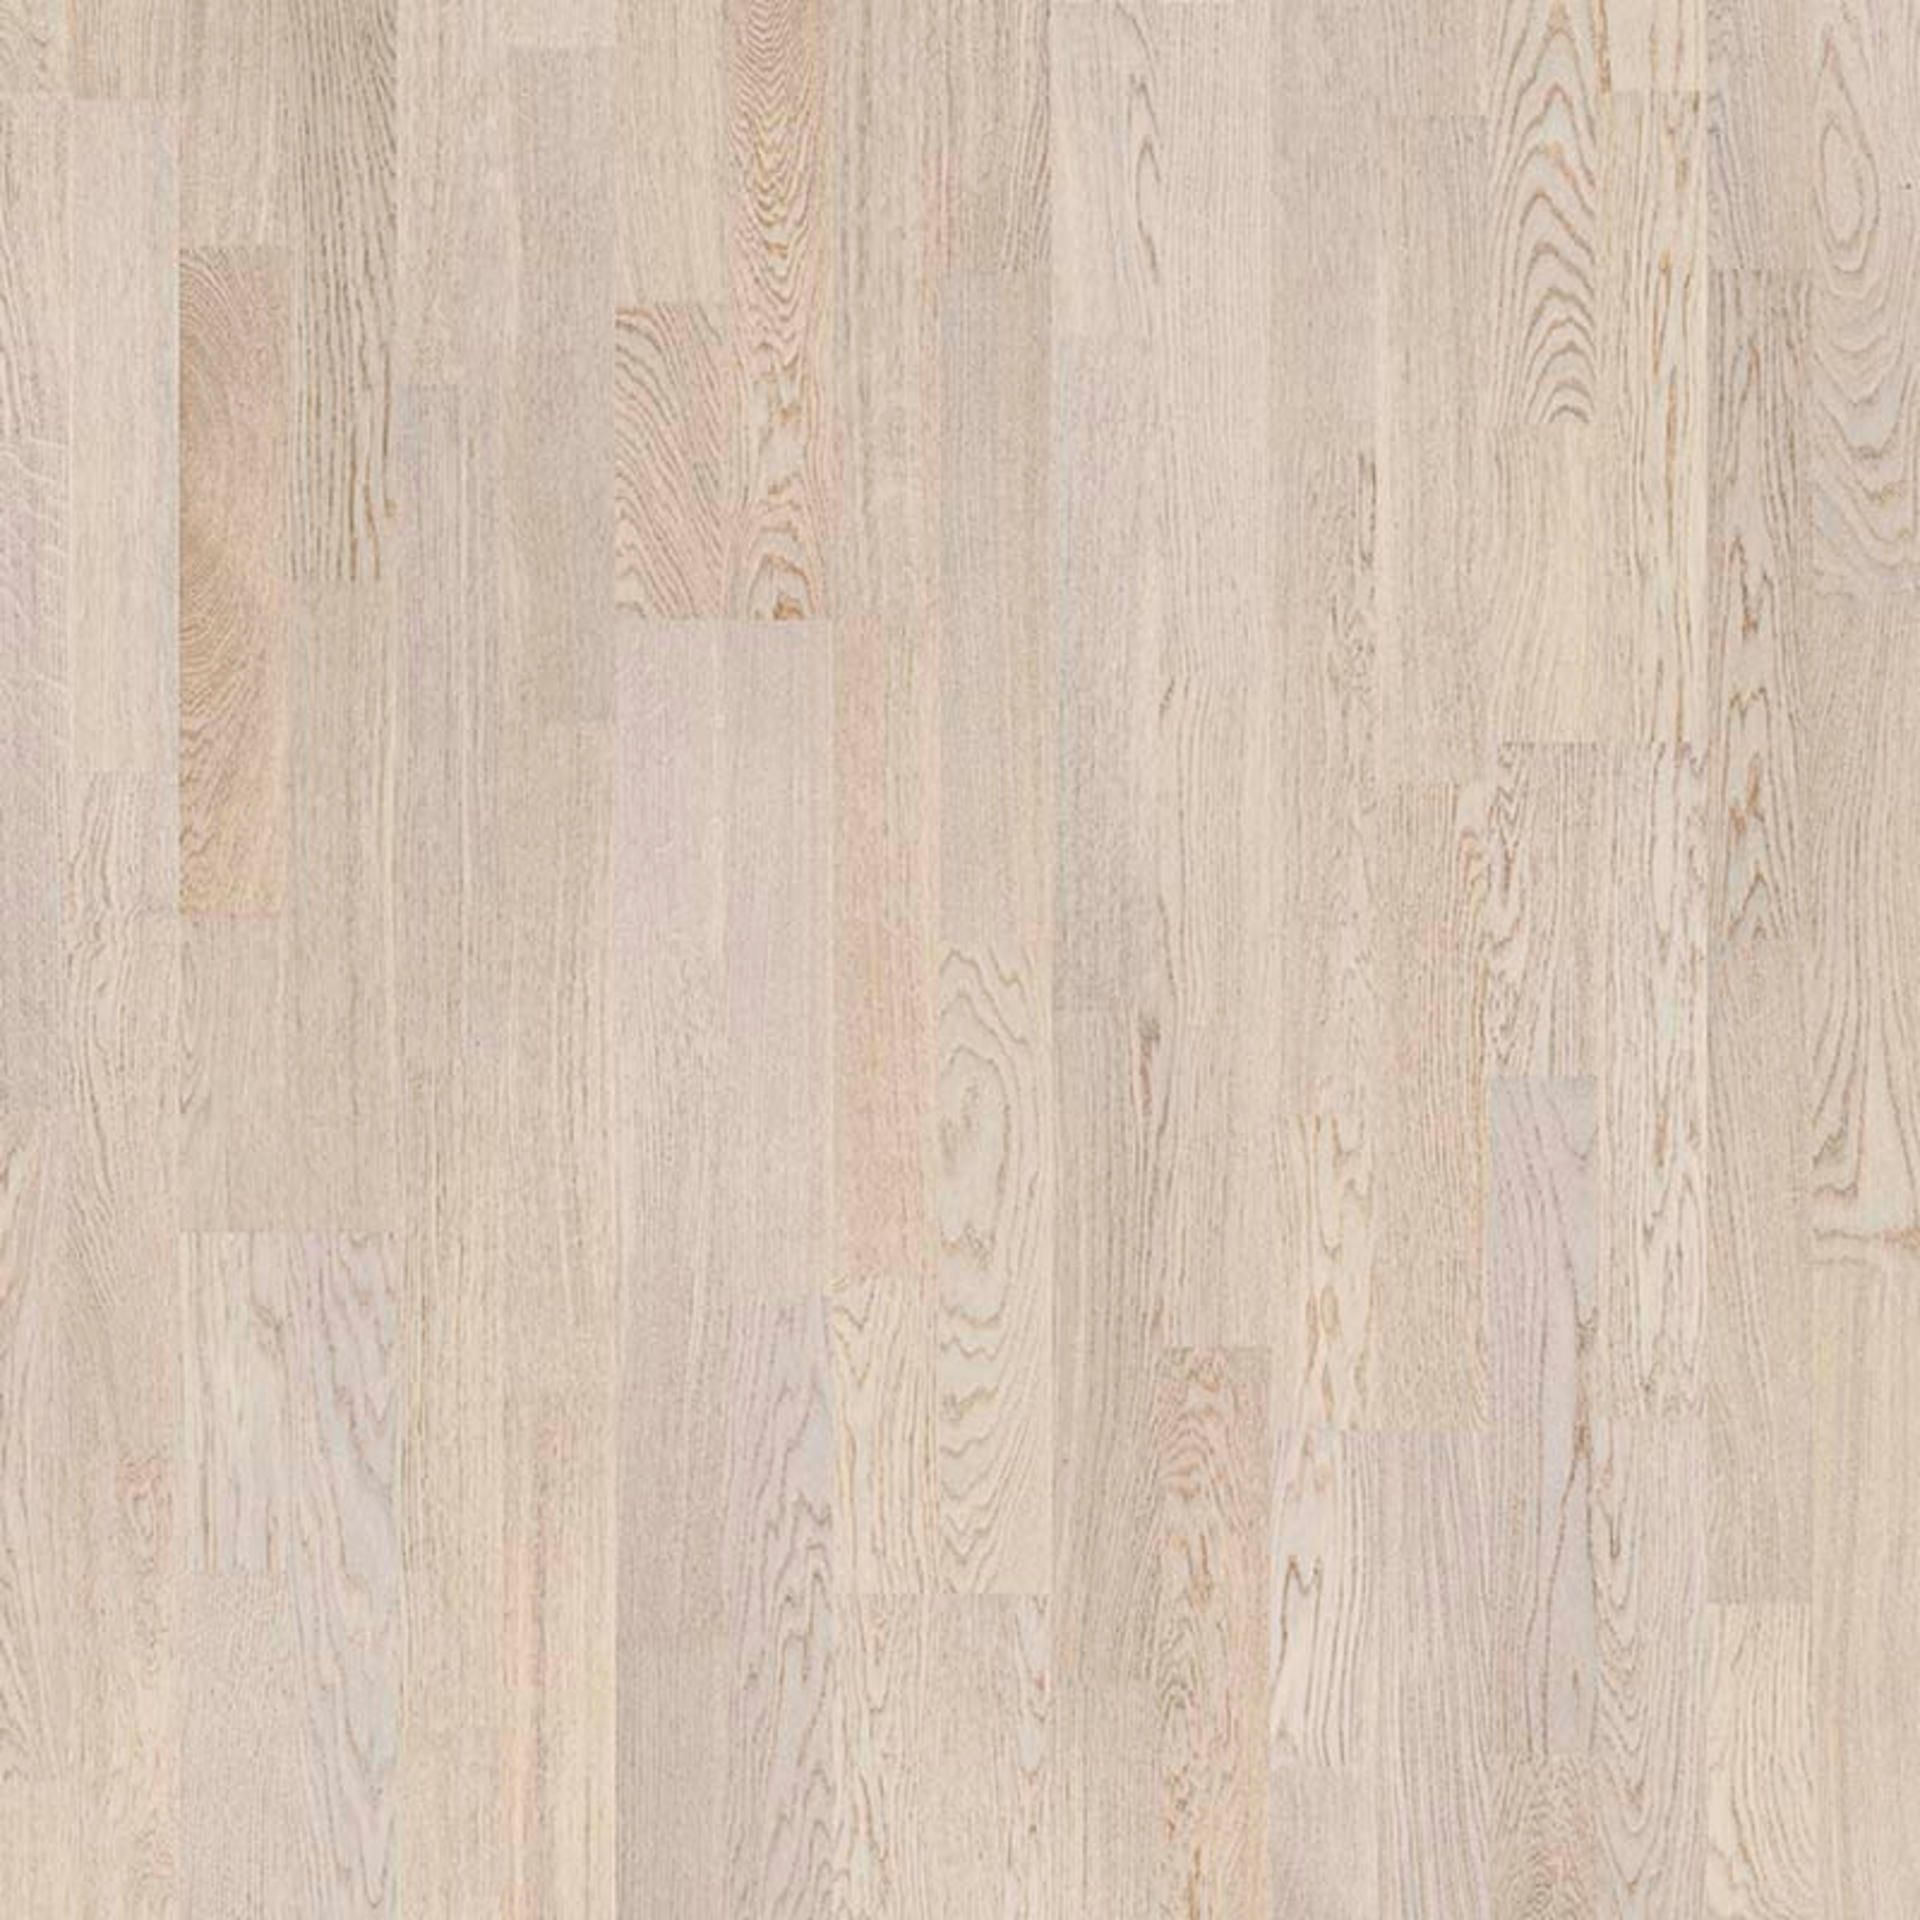 Holzboden Eiche Cotton weiß 2 Stab MADRID-TB15 Planke 194 x 2281 mm